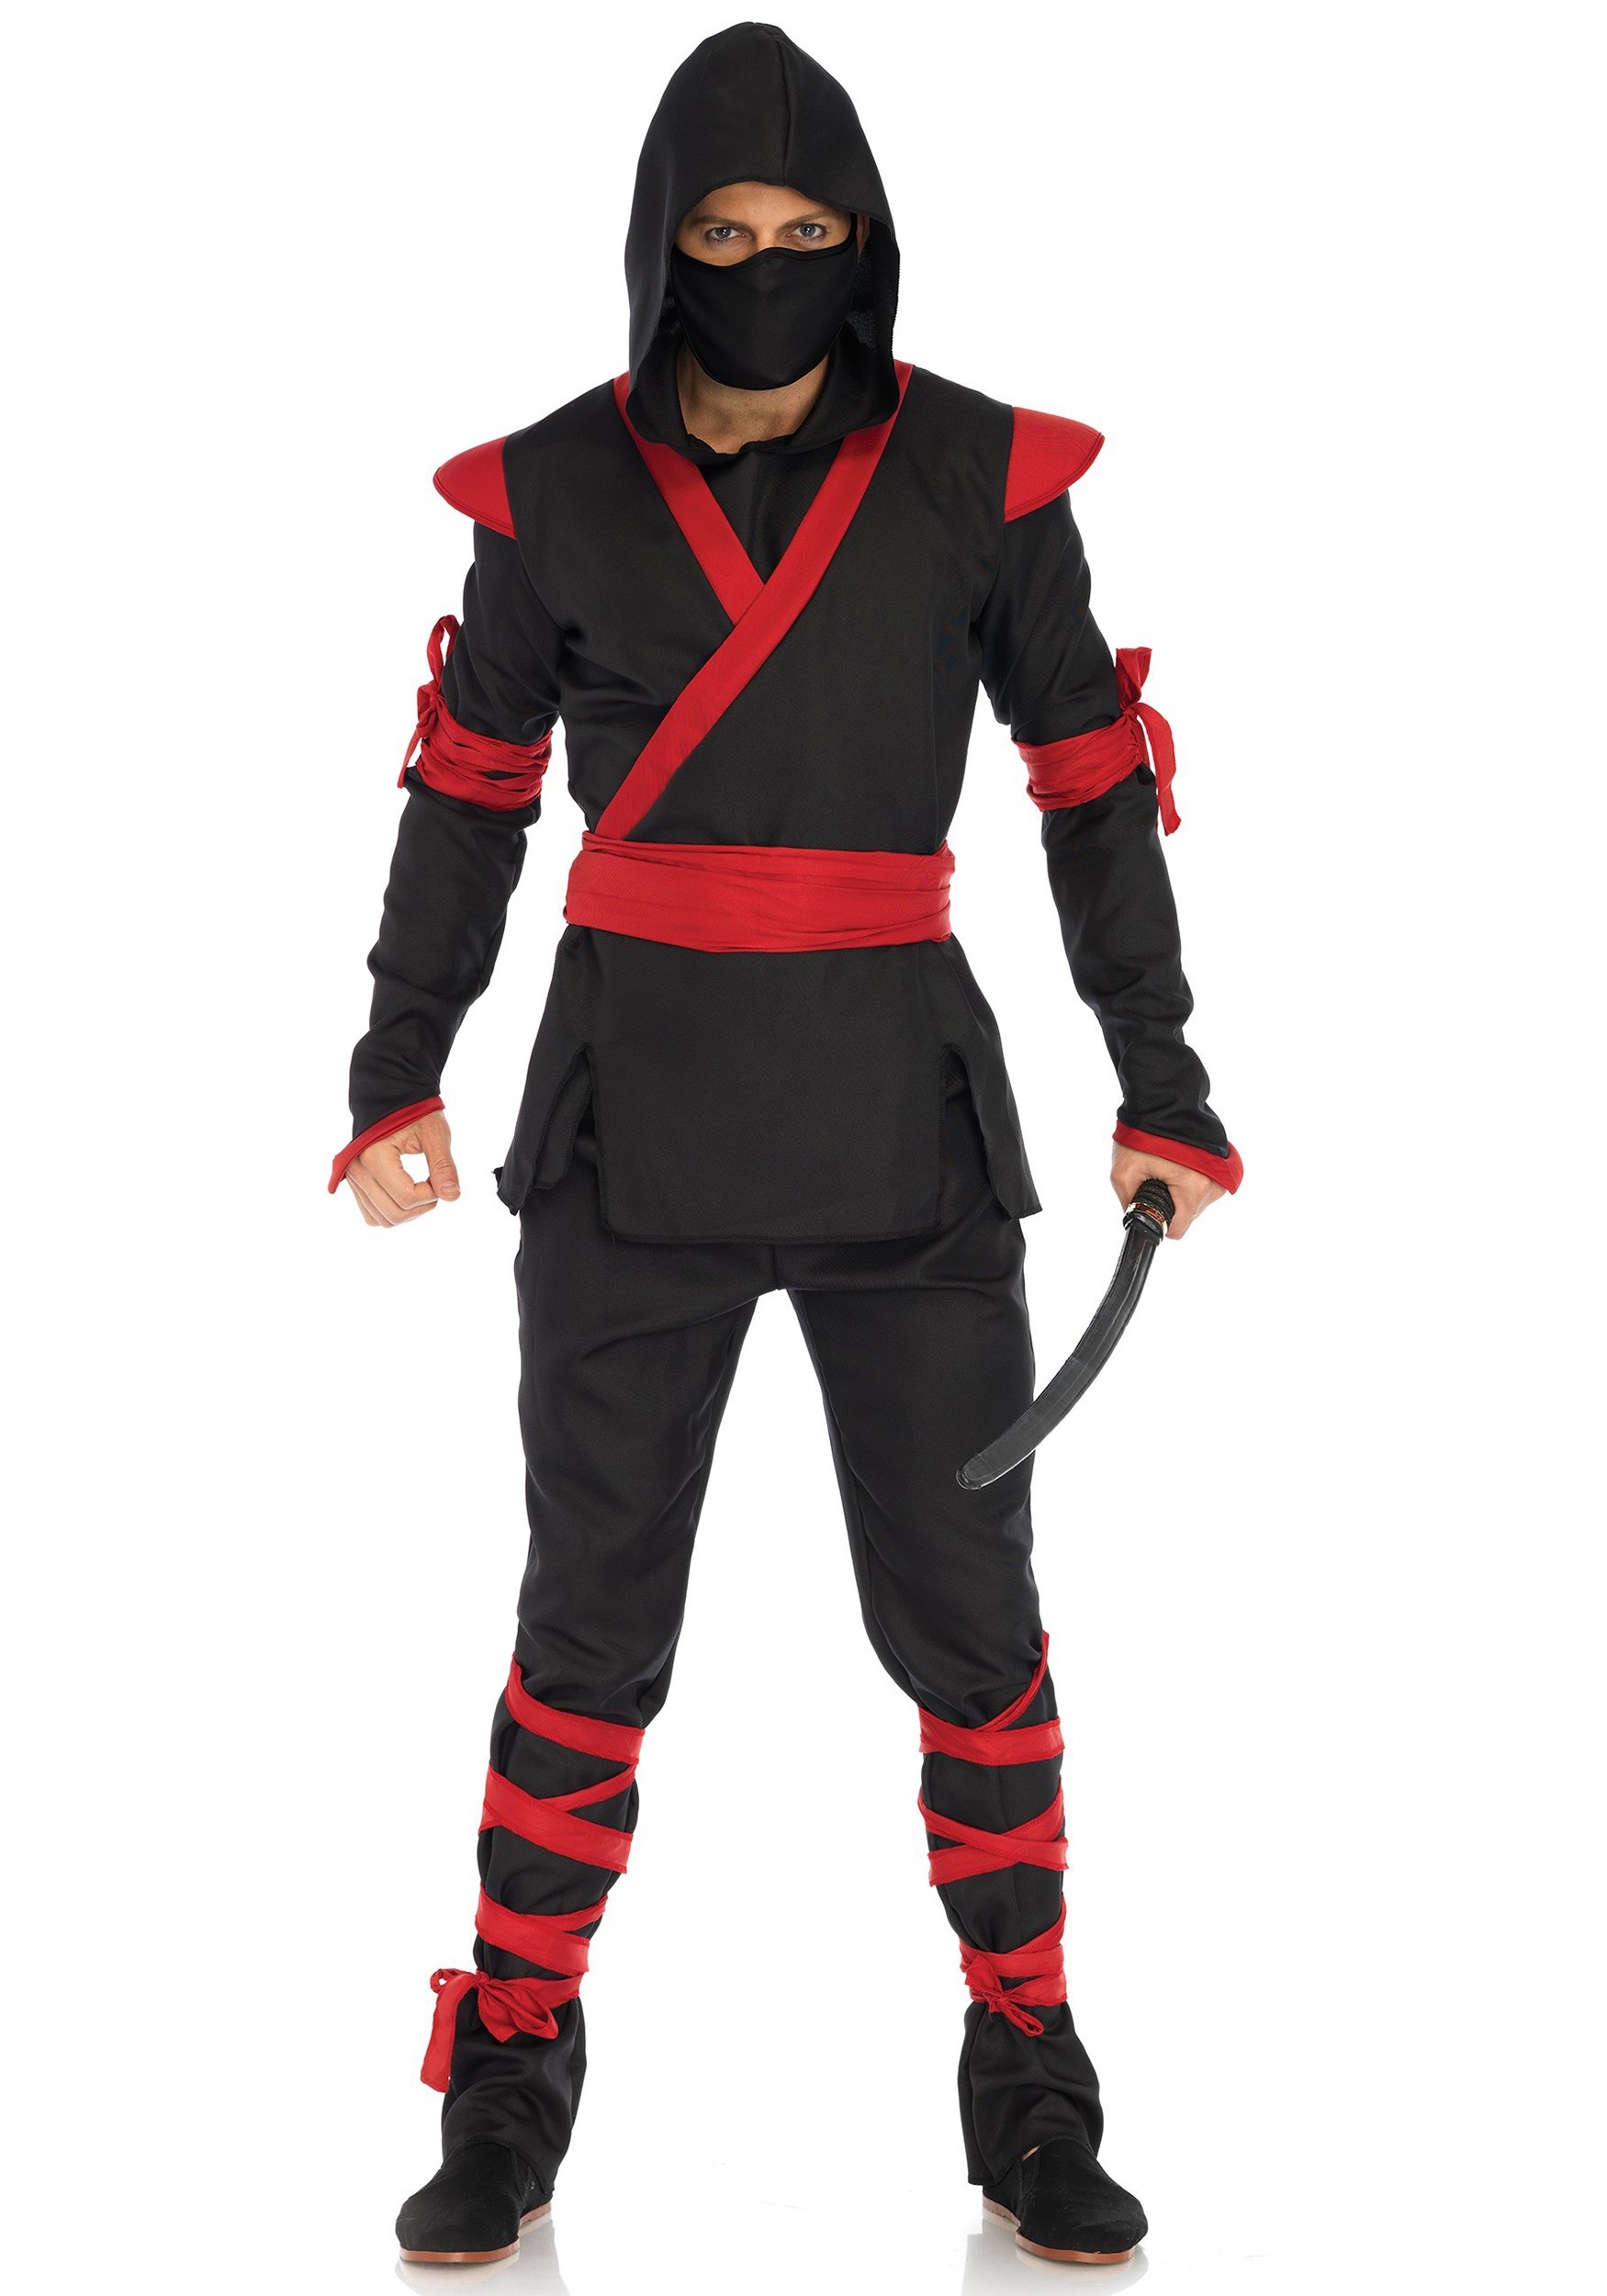 https://images.halloweencostumes.com/products/48348/1-1/mens-adult-ninja-costume-.jpg